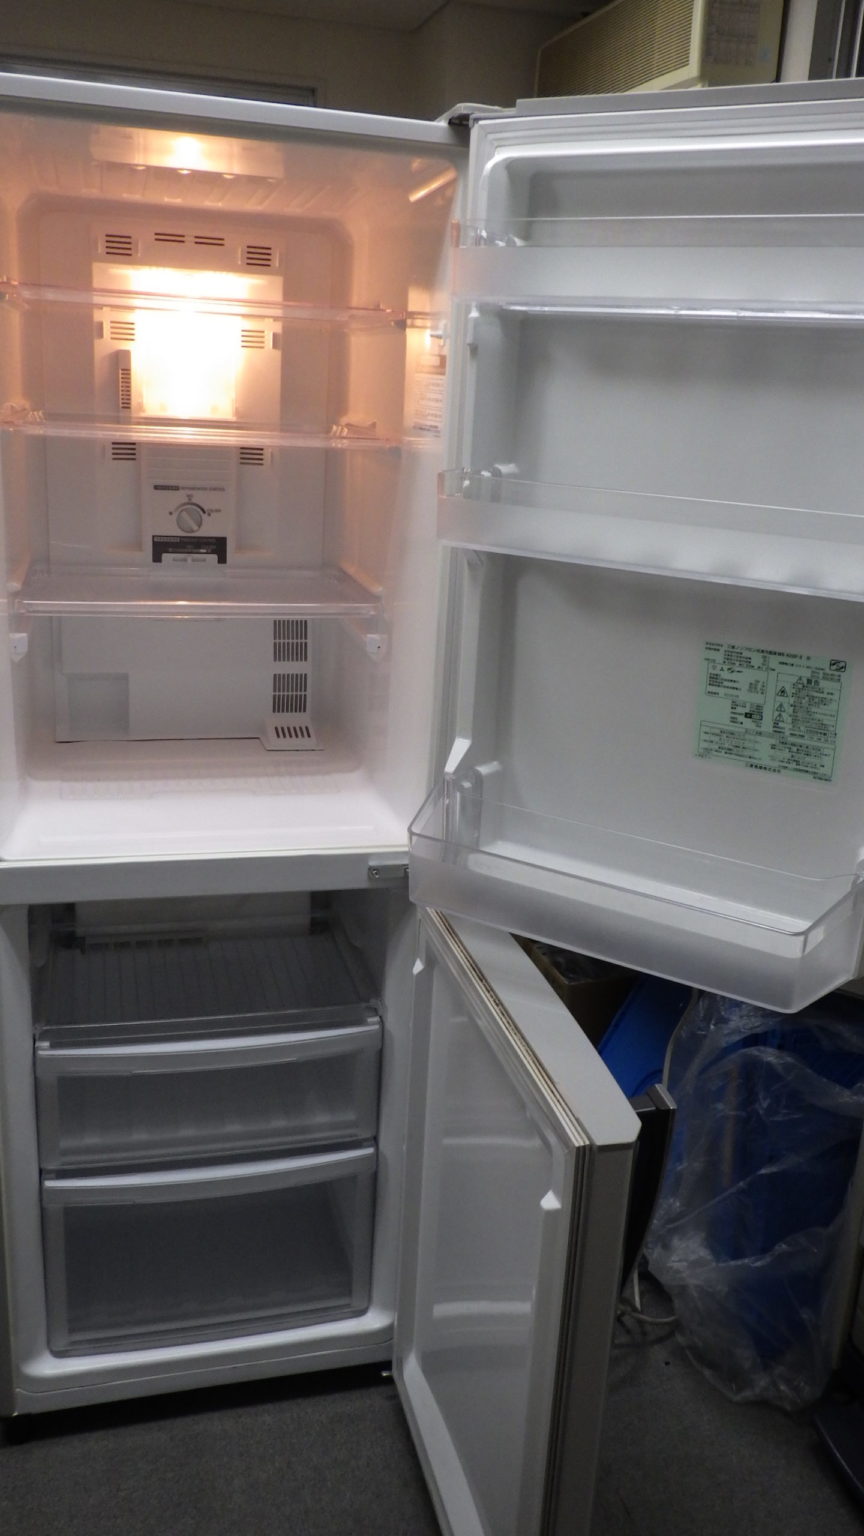 MITSUBISHI 冷蔵庫 MR-H26T-P 2012年製 256L ピンク - 冷蔵庫・冷凍庫